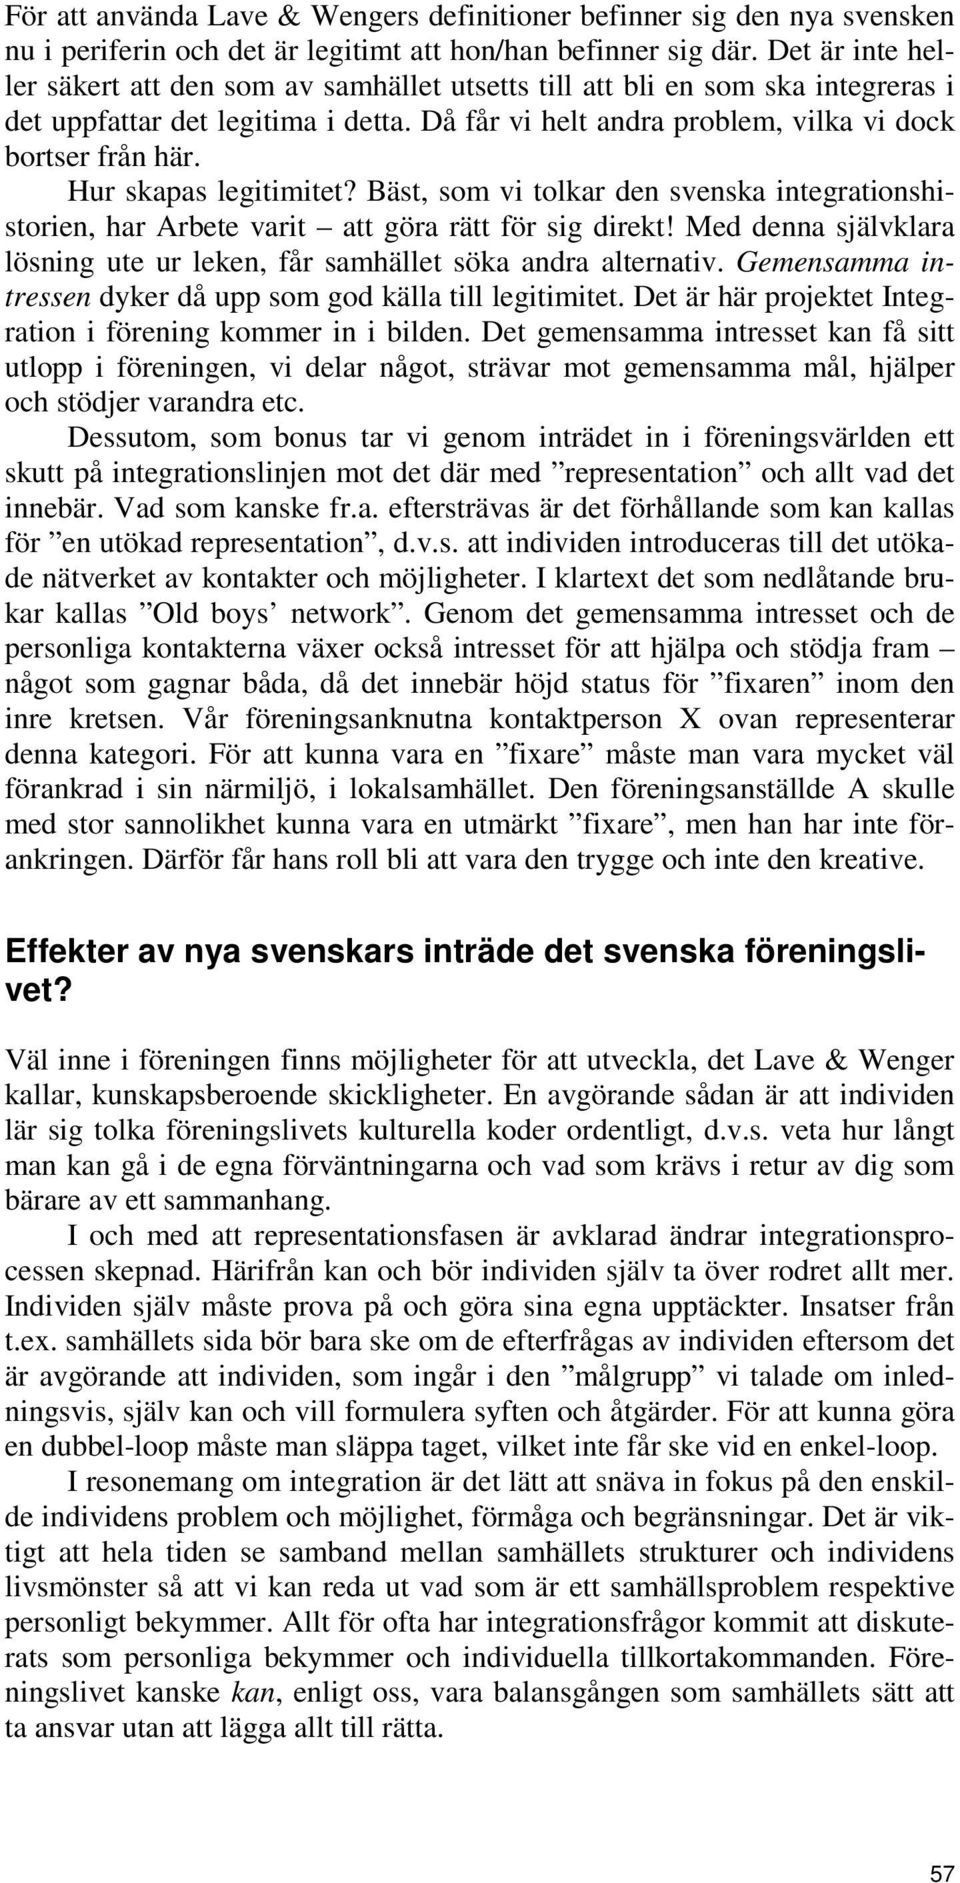 Hur skapas legitimitet? Bäst, som vi tolkar den svenska integrationshistorien, har Arbete varit att göra rätt för sig direkt!